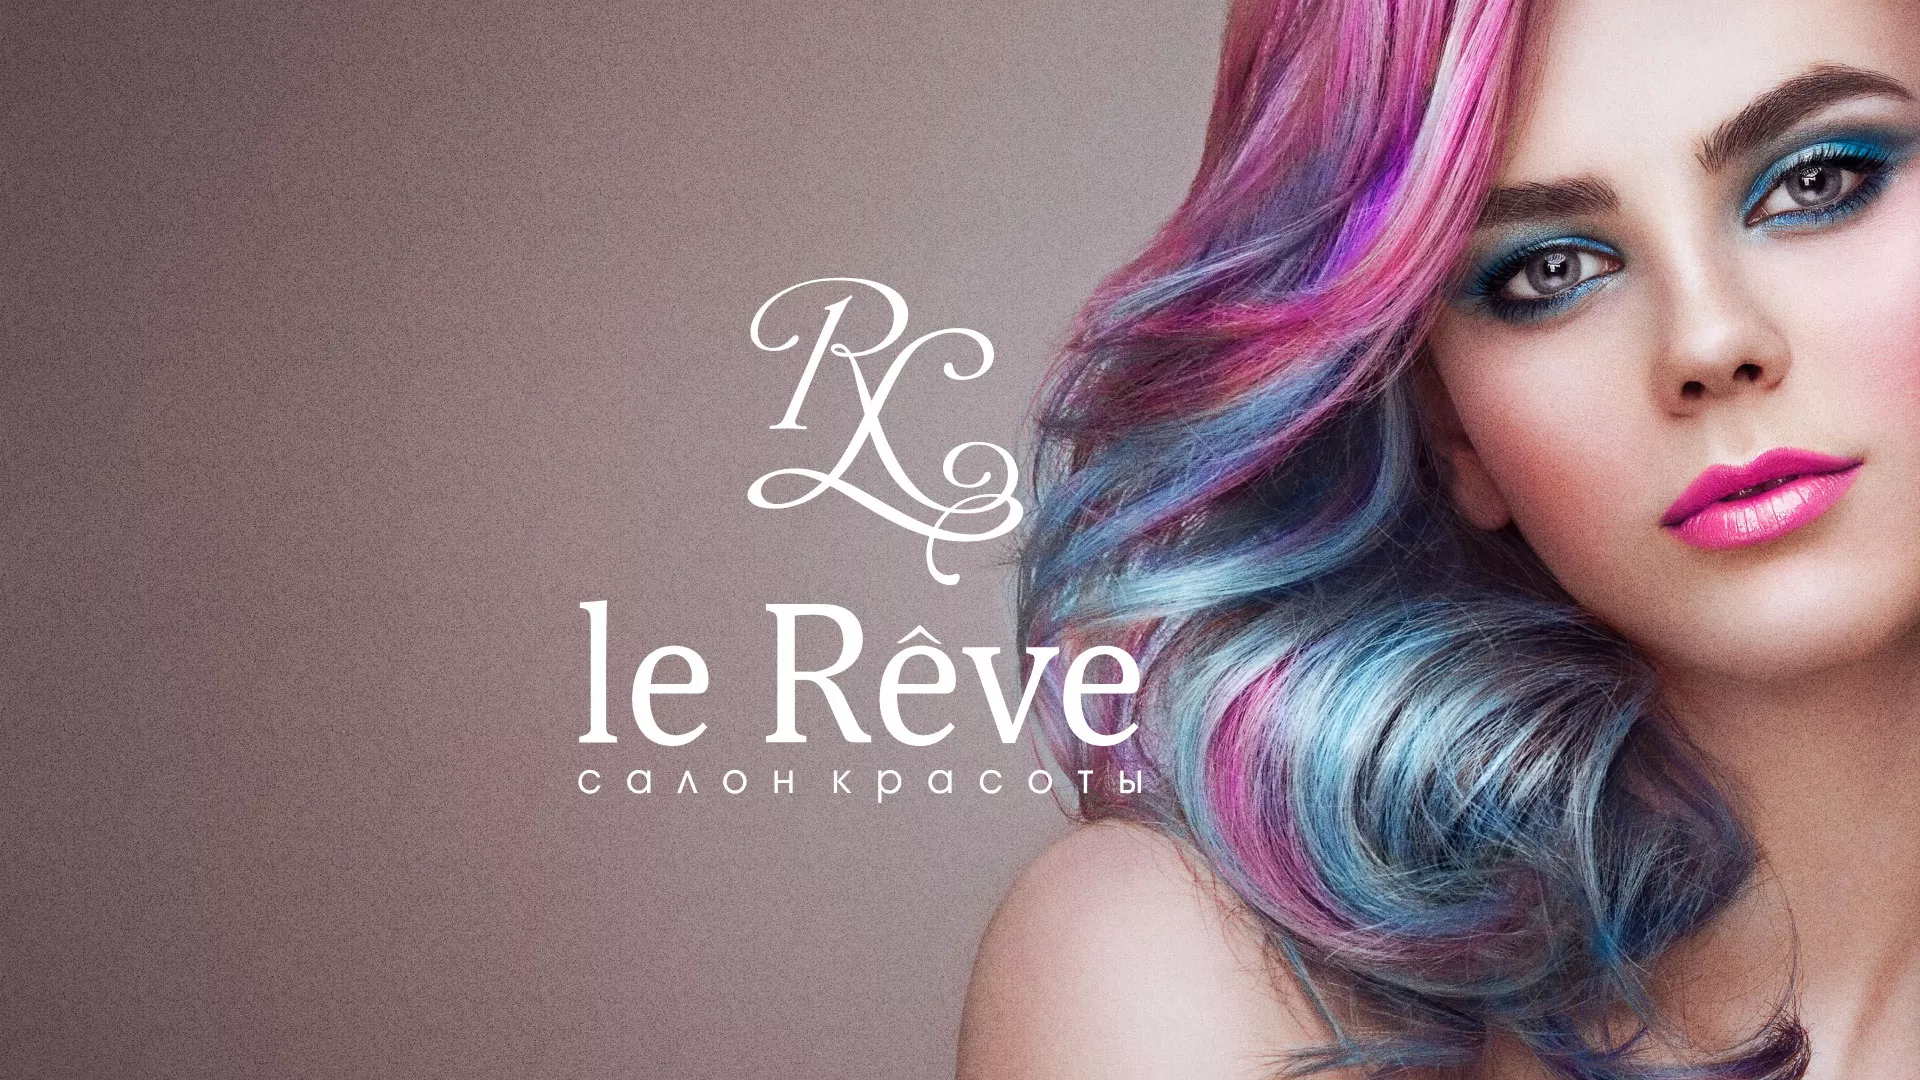 Создание сайта для салона красоты «Le Reve» в Качканаре